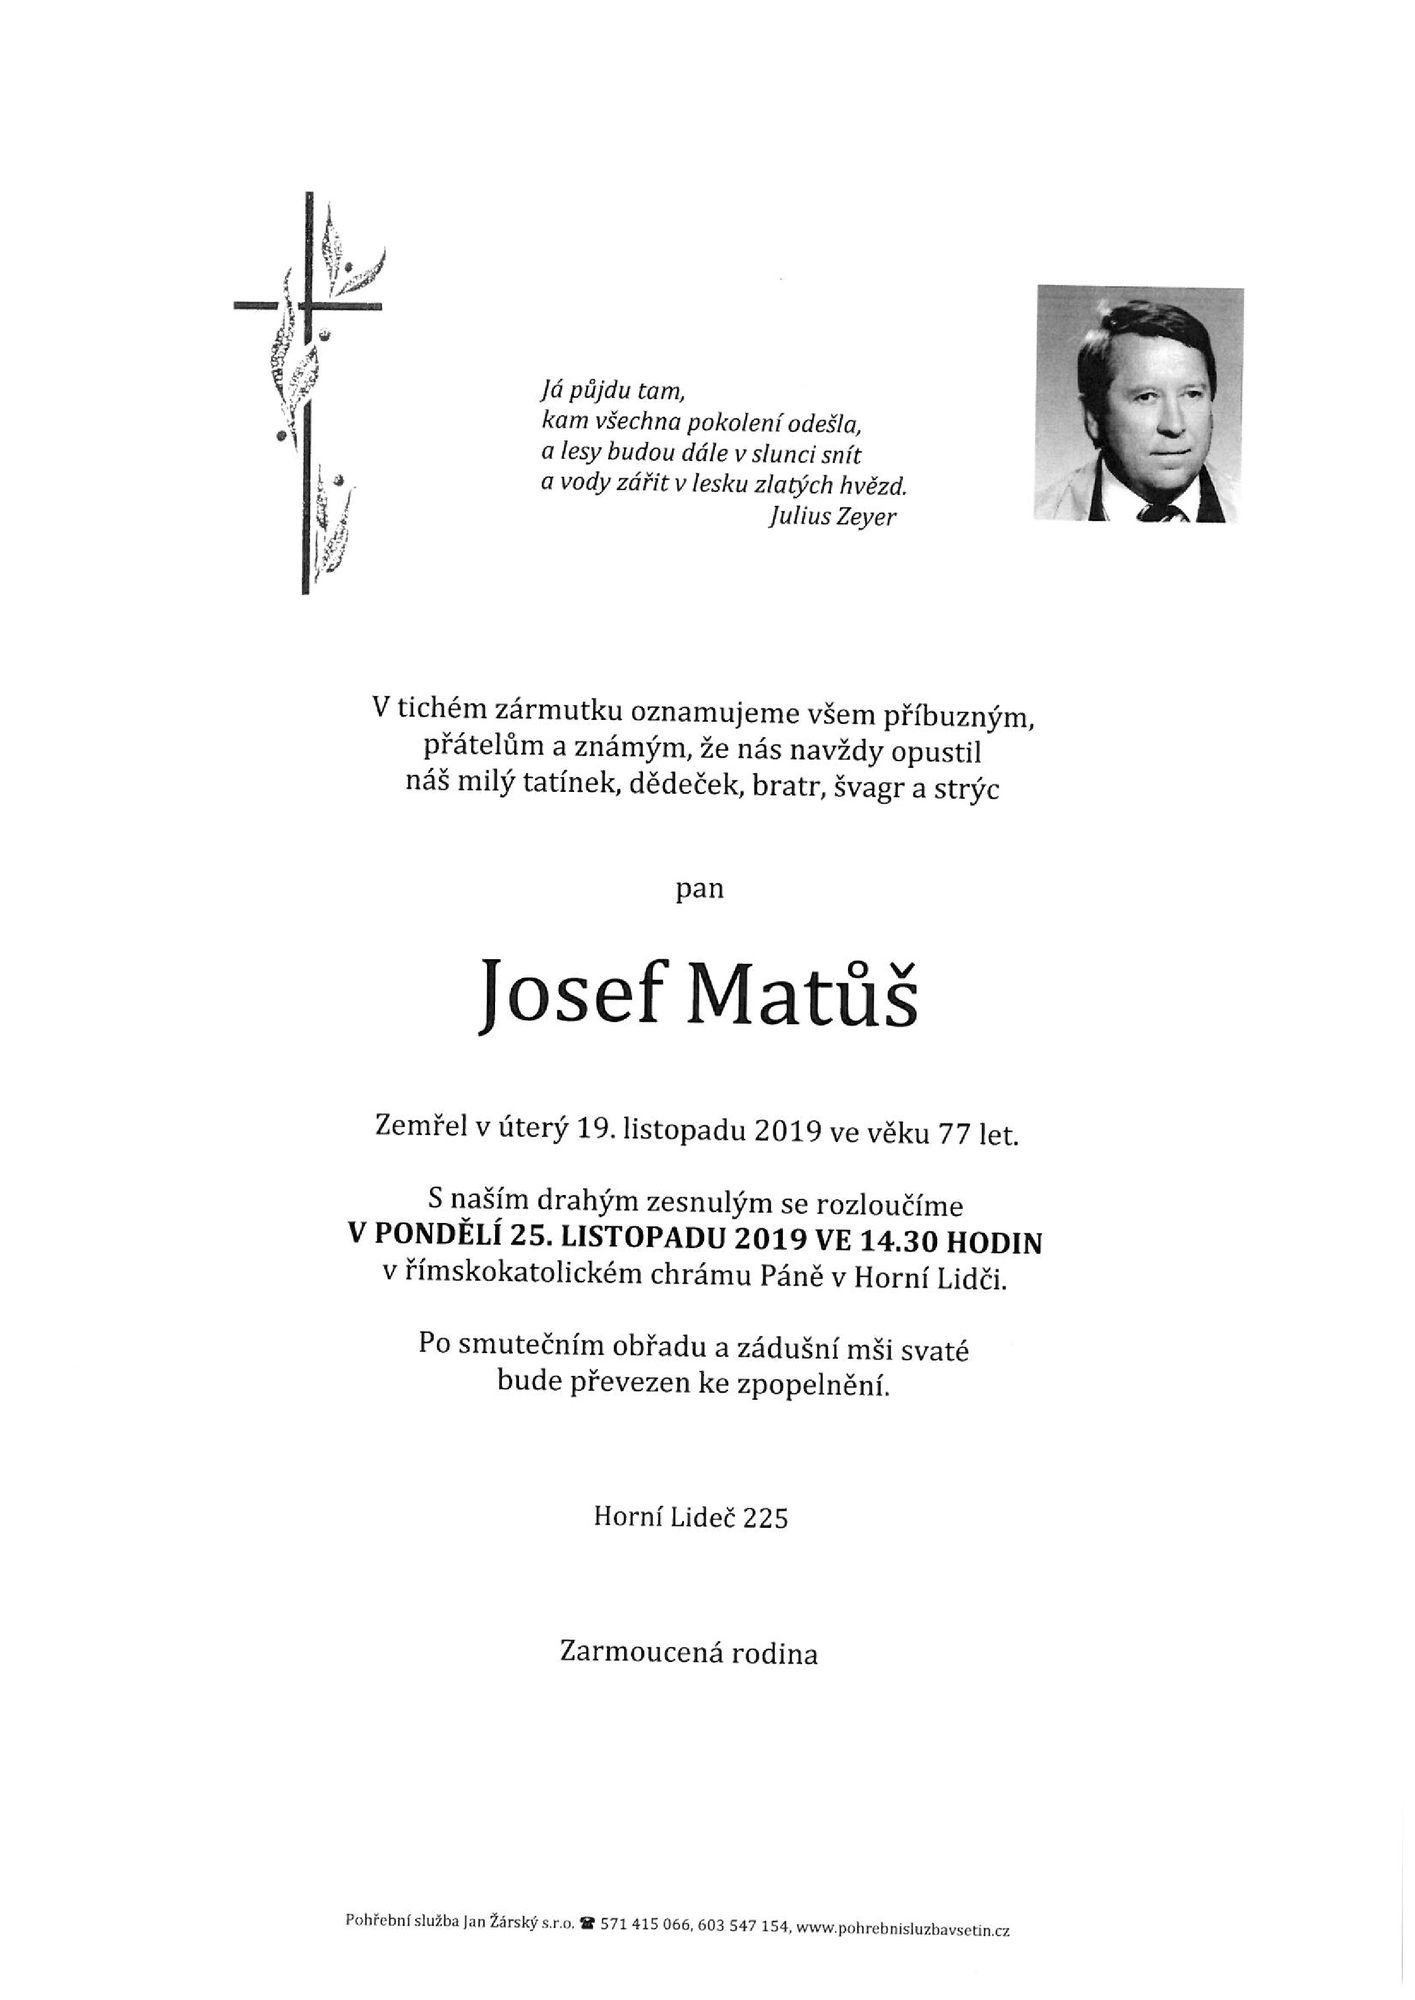 Josef Matůš